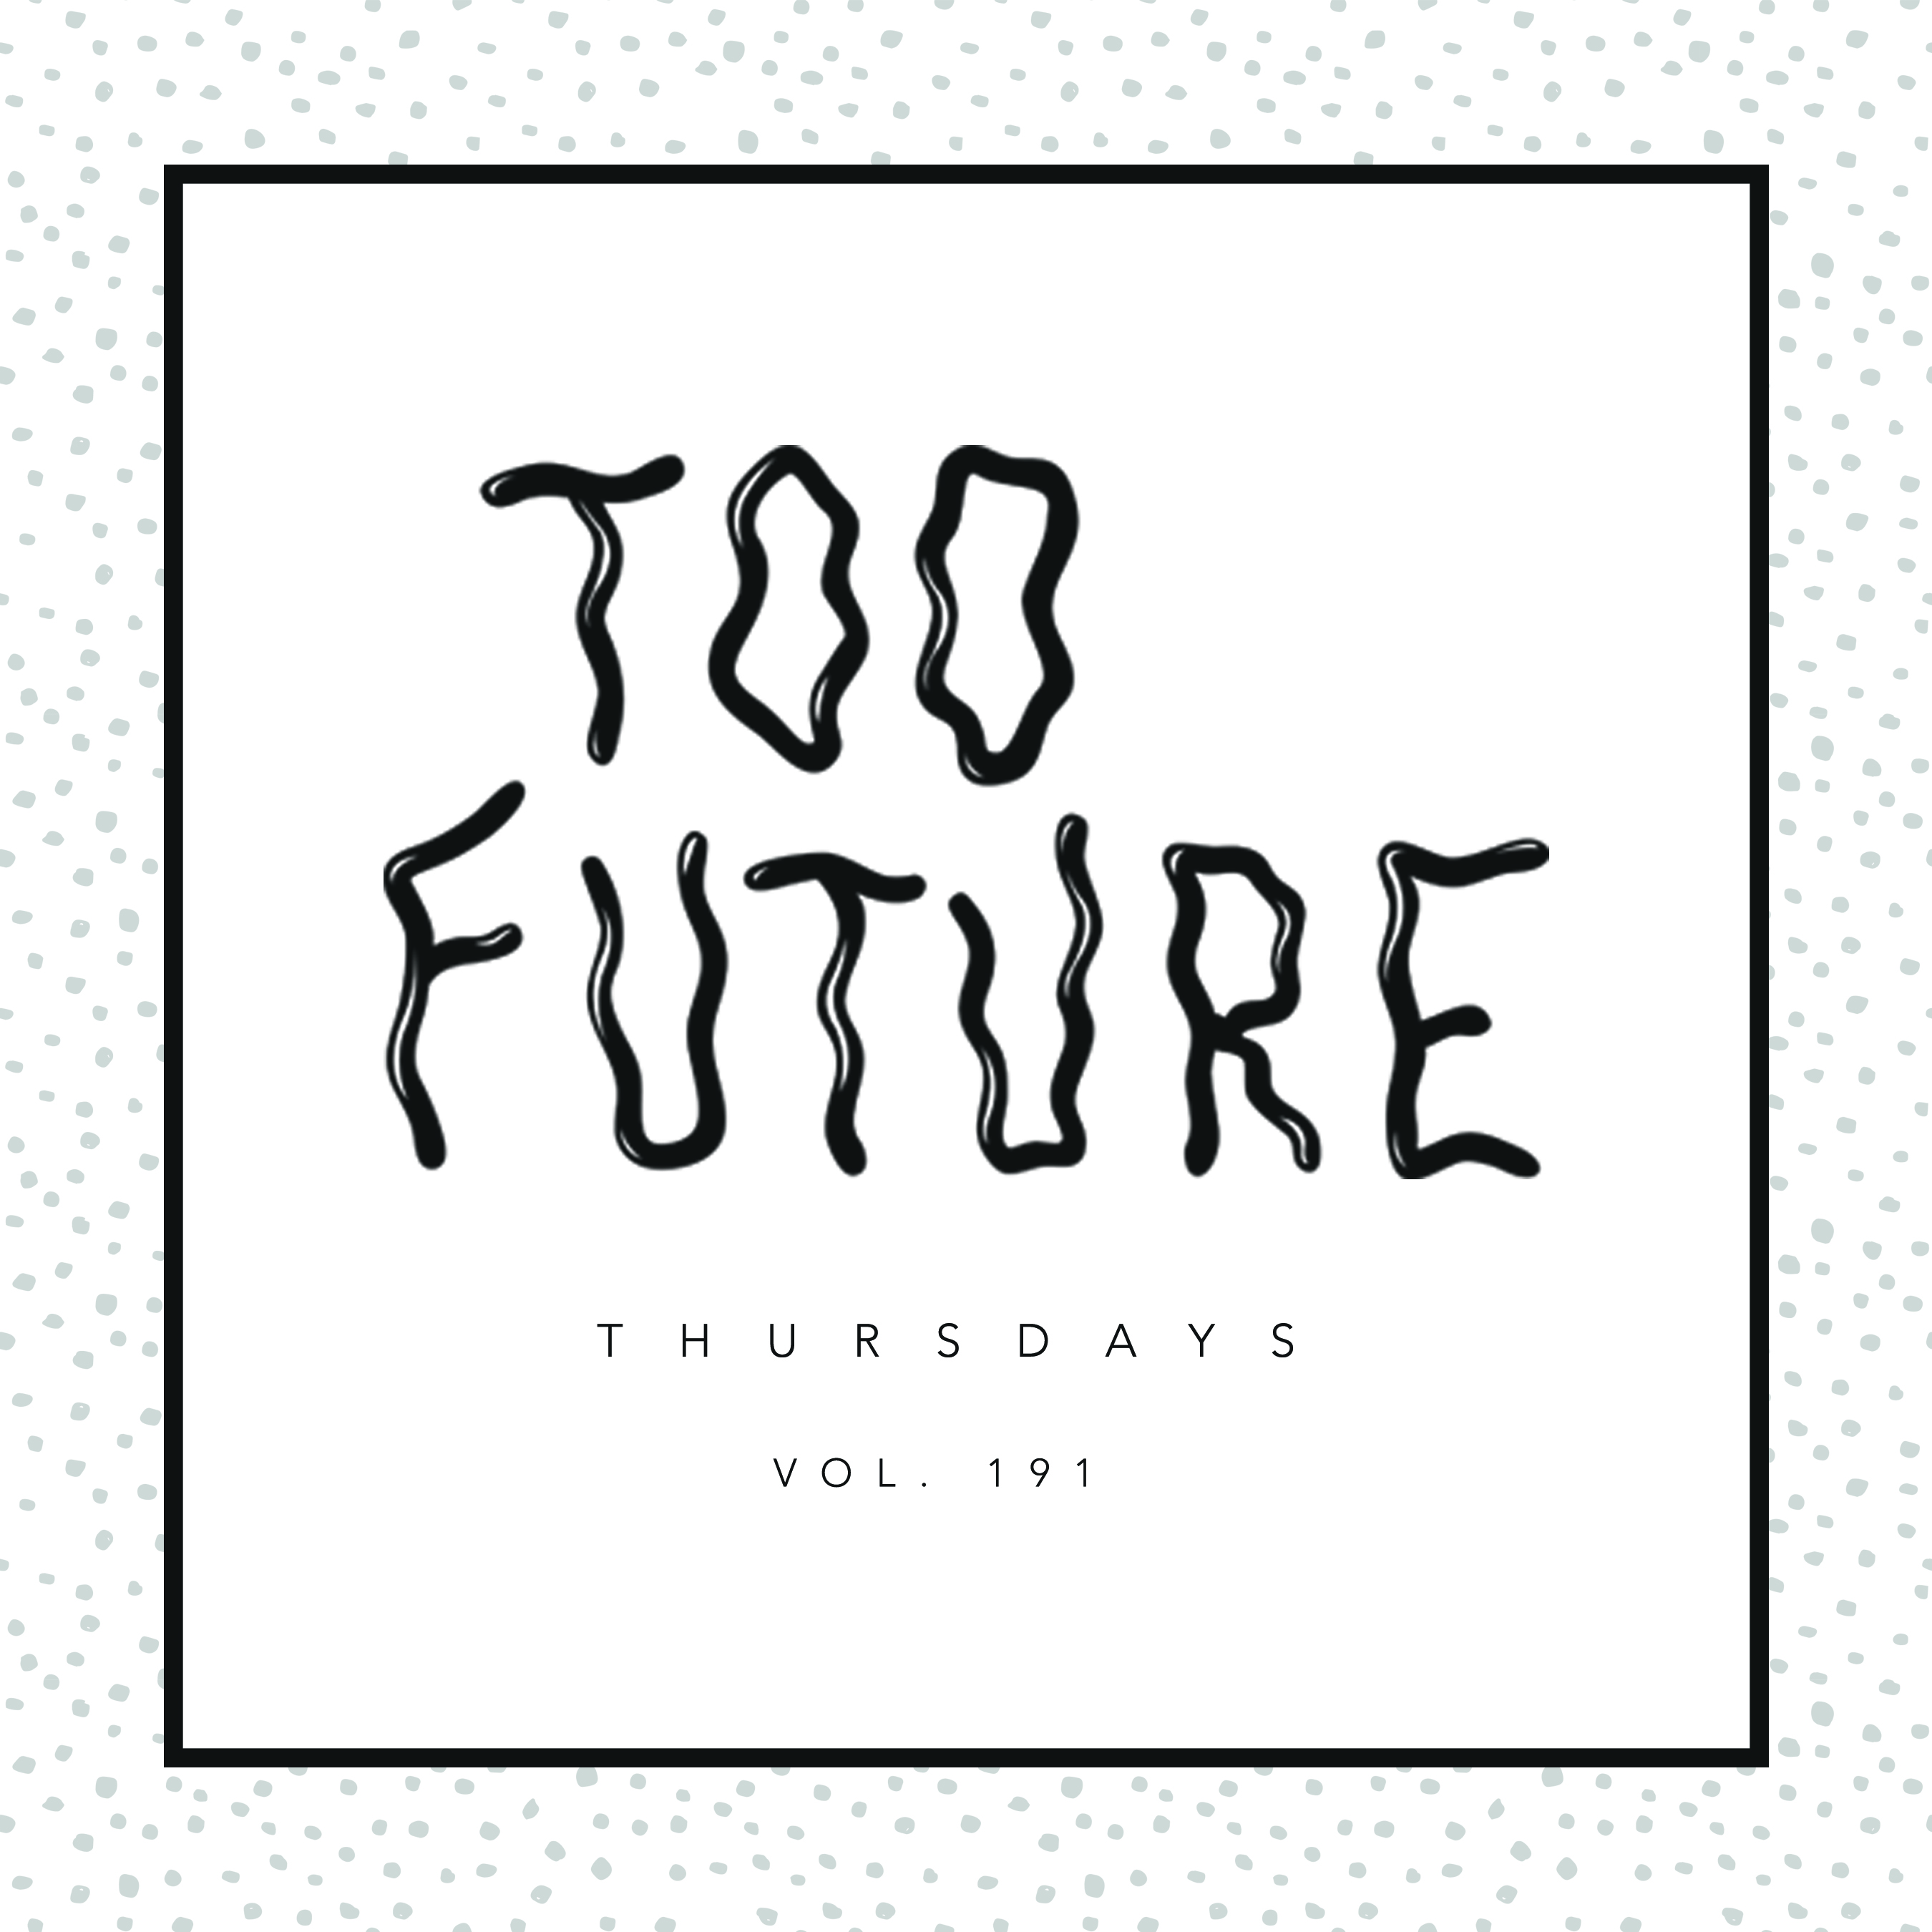 too-future-thursdays-vol-191